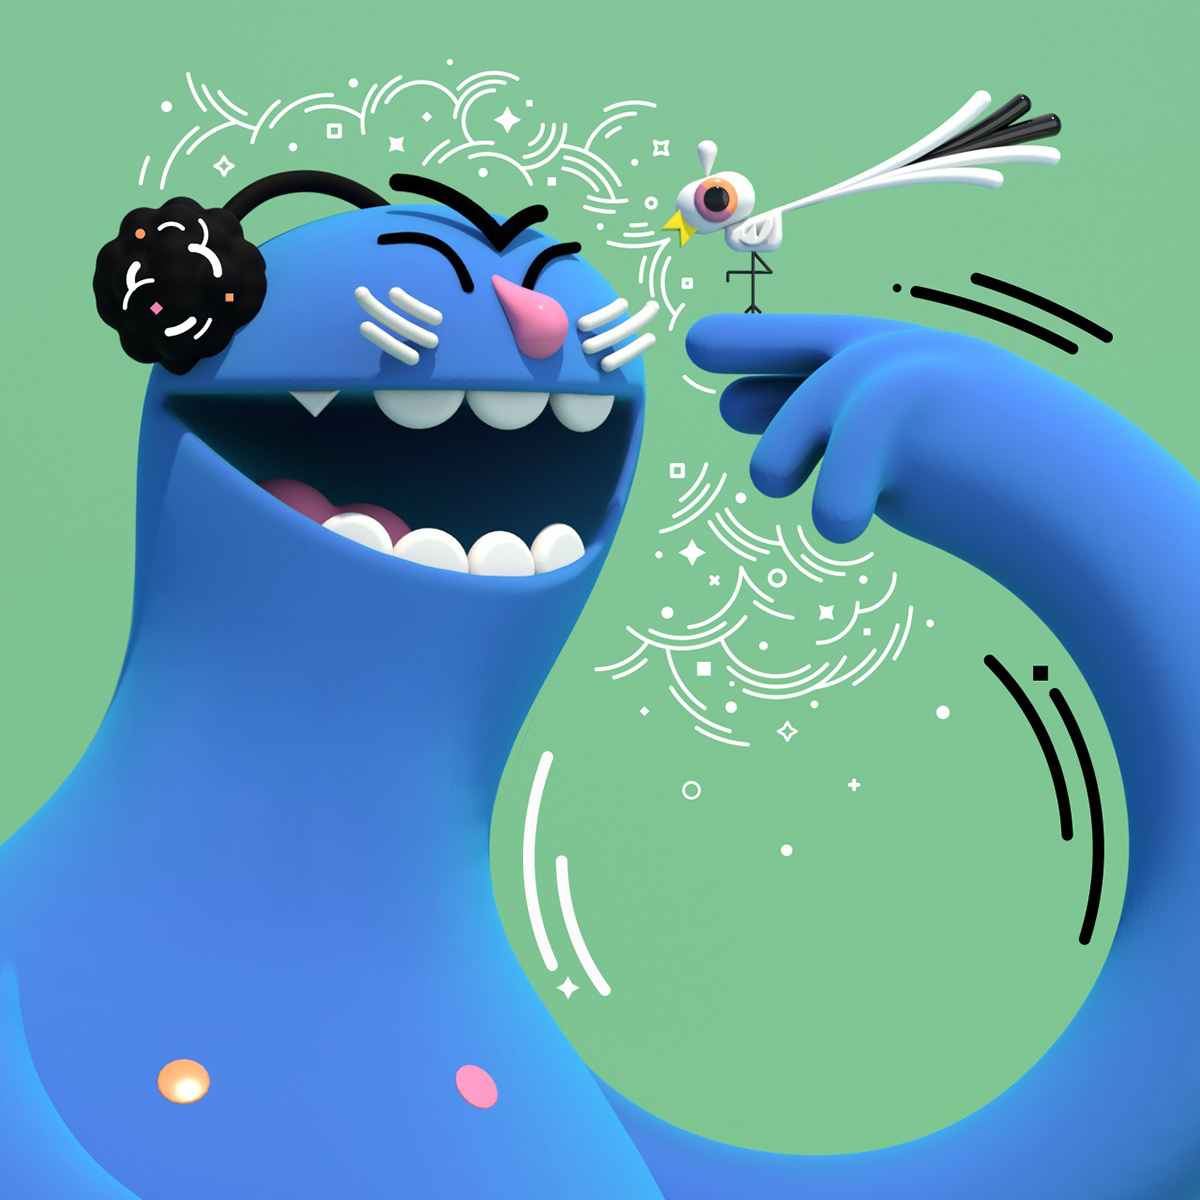 2D 3D 3Dillustration c4d CGI Character design  character illustration graphic design  ILLUSTRATION  monster